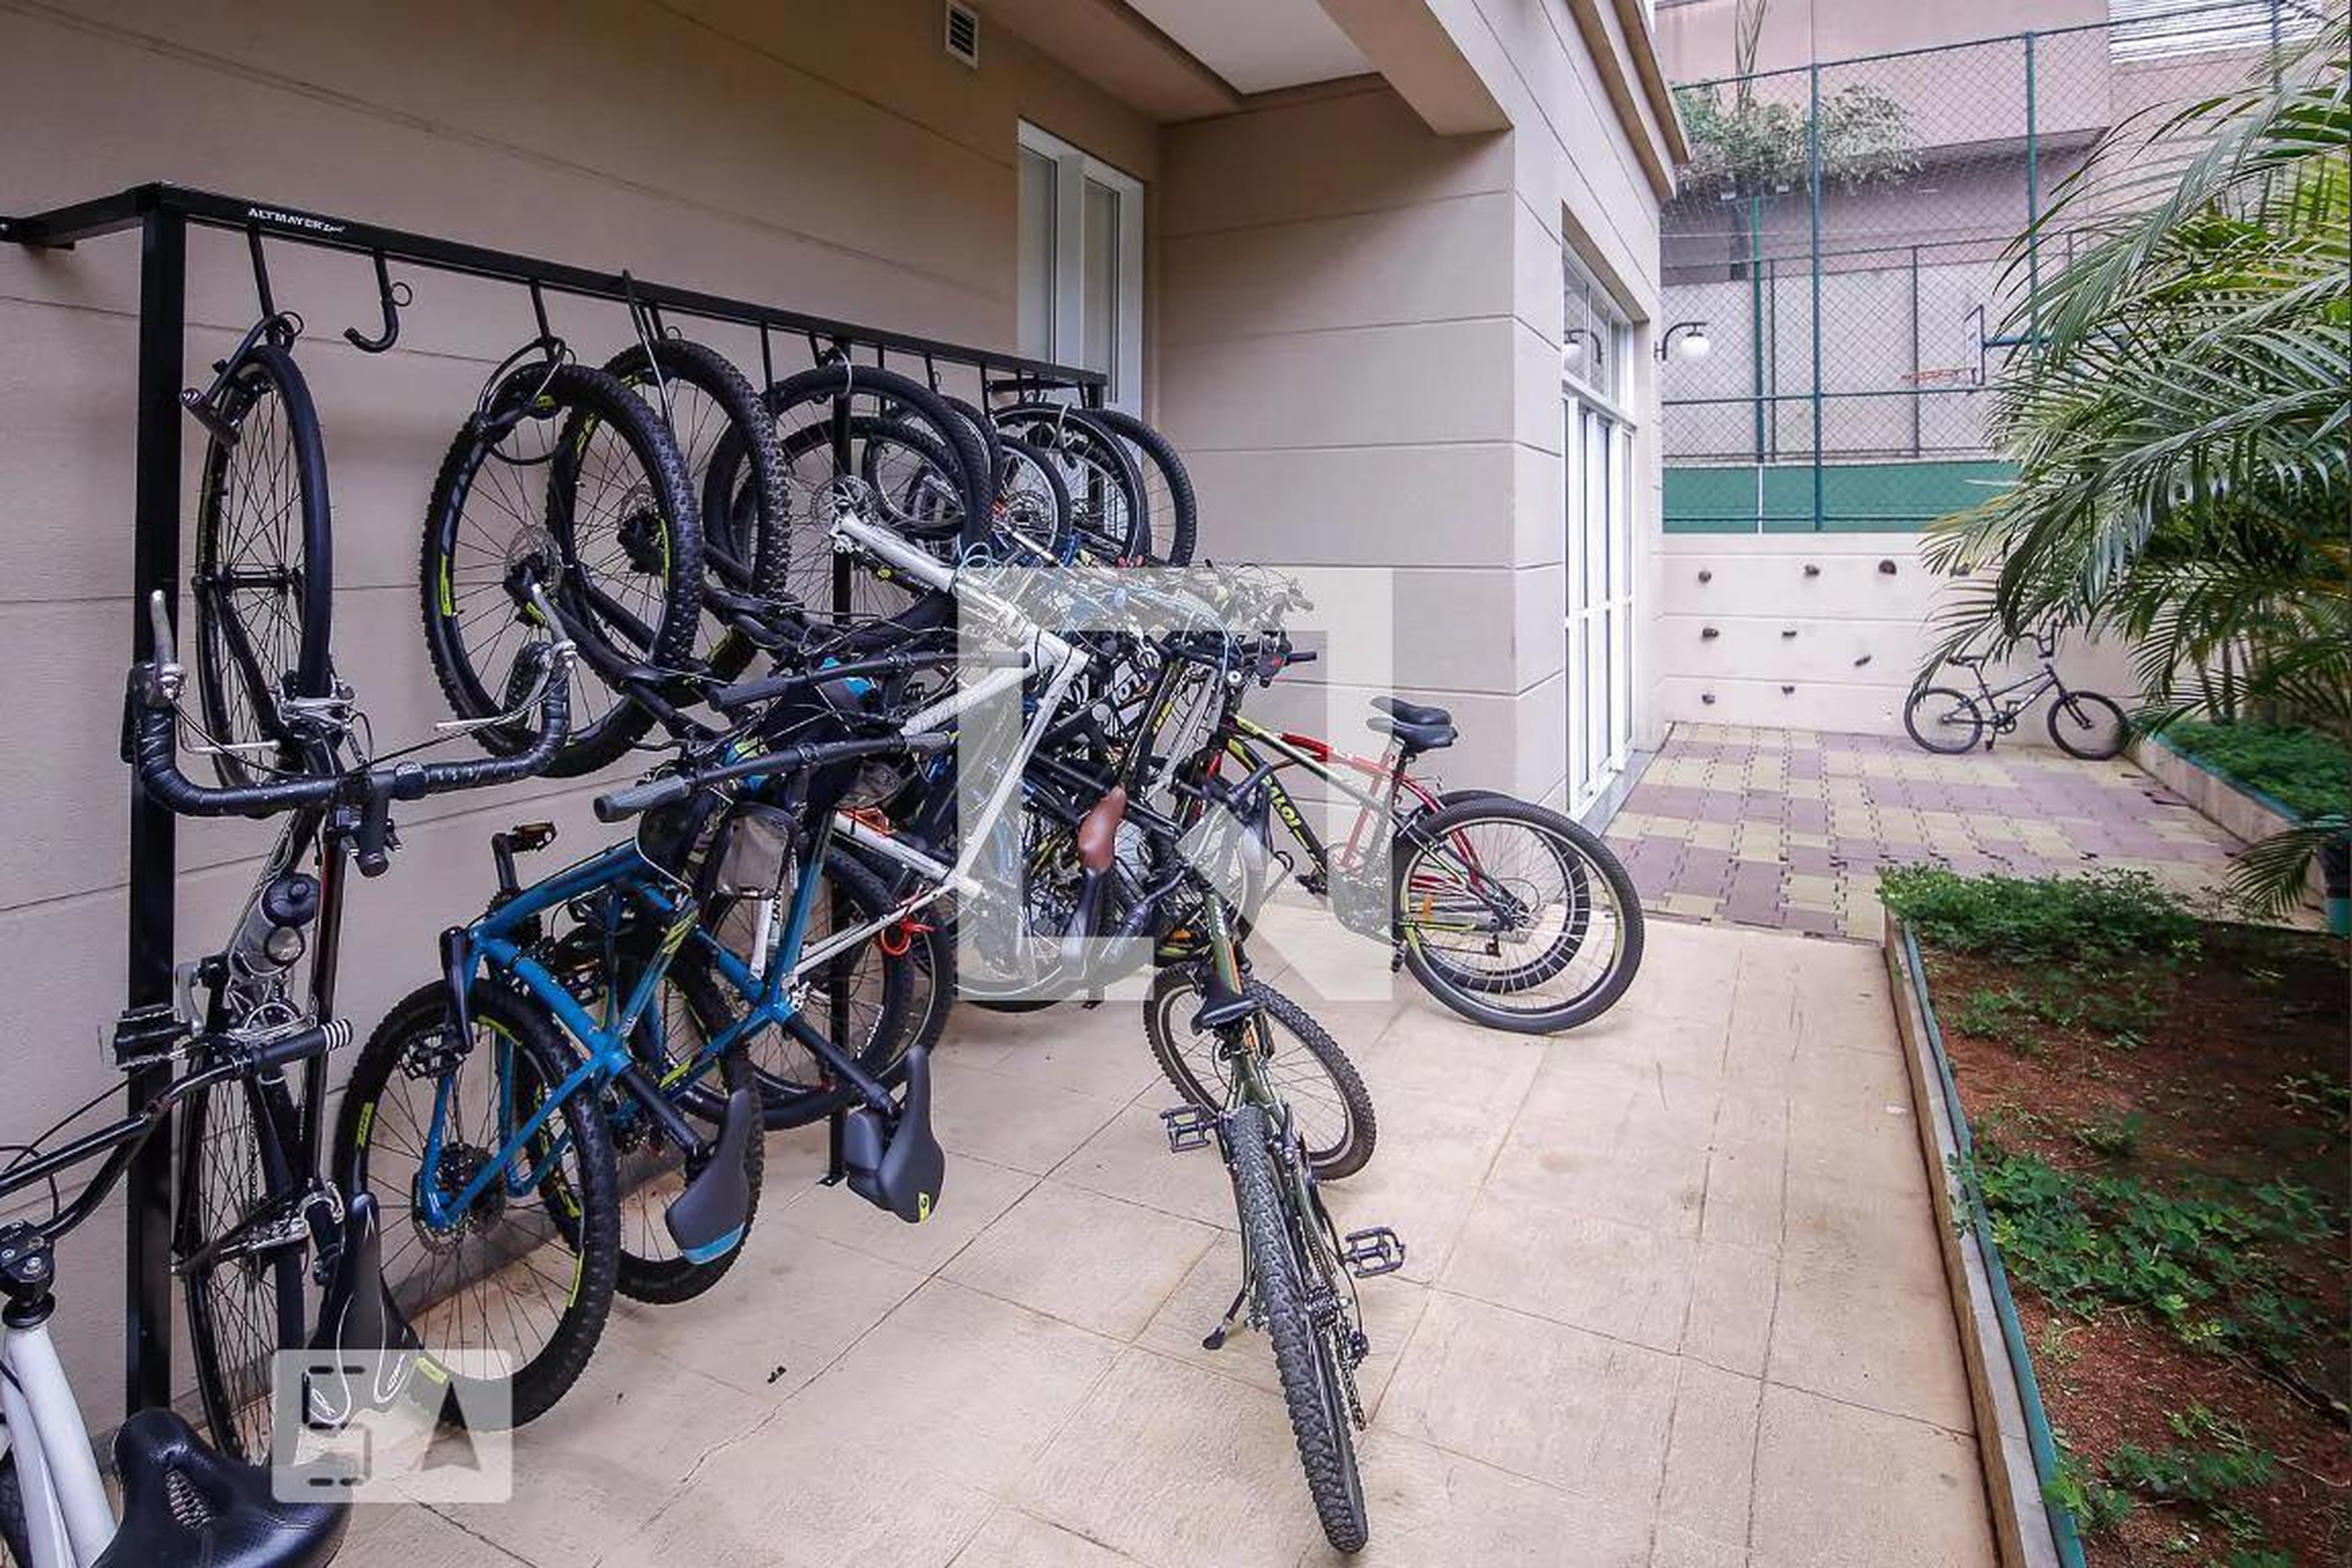 Bicicletário - Garden Club Barra Funda